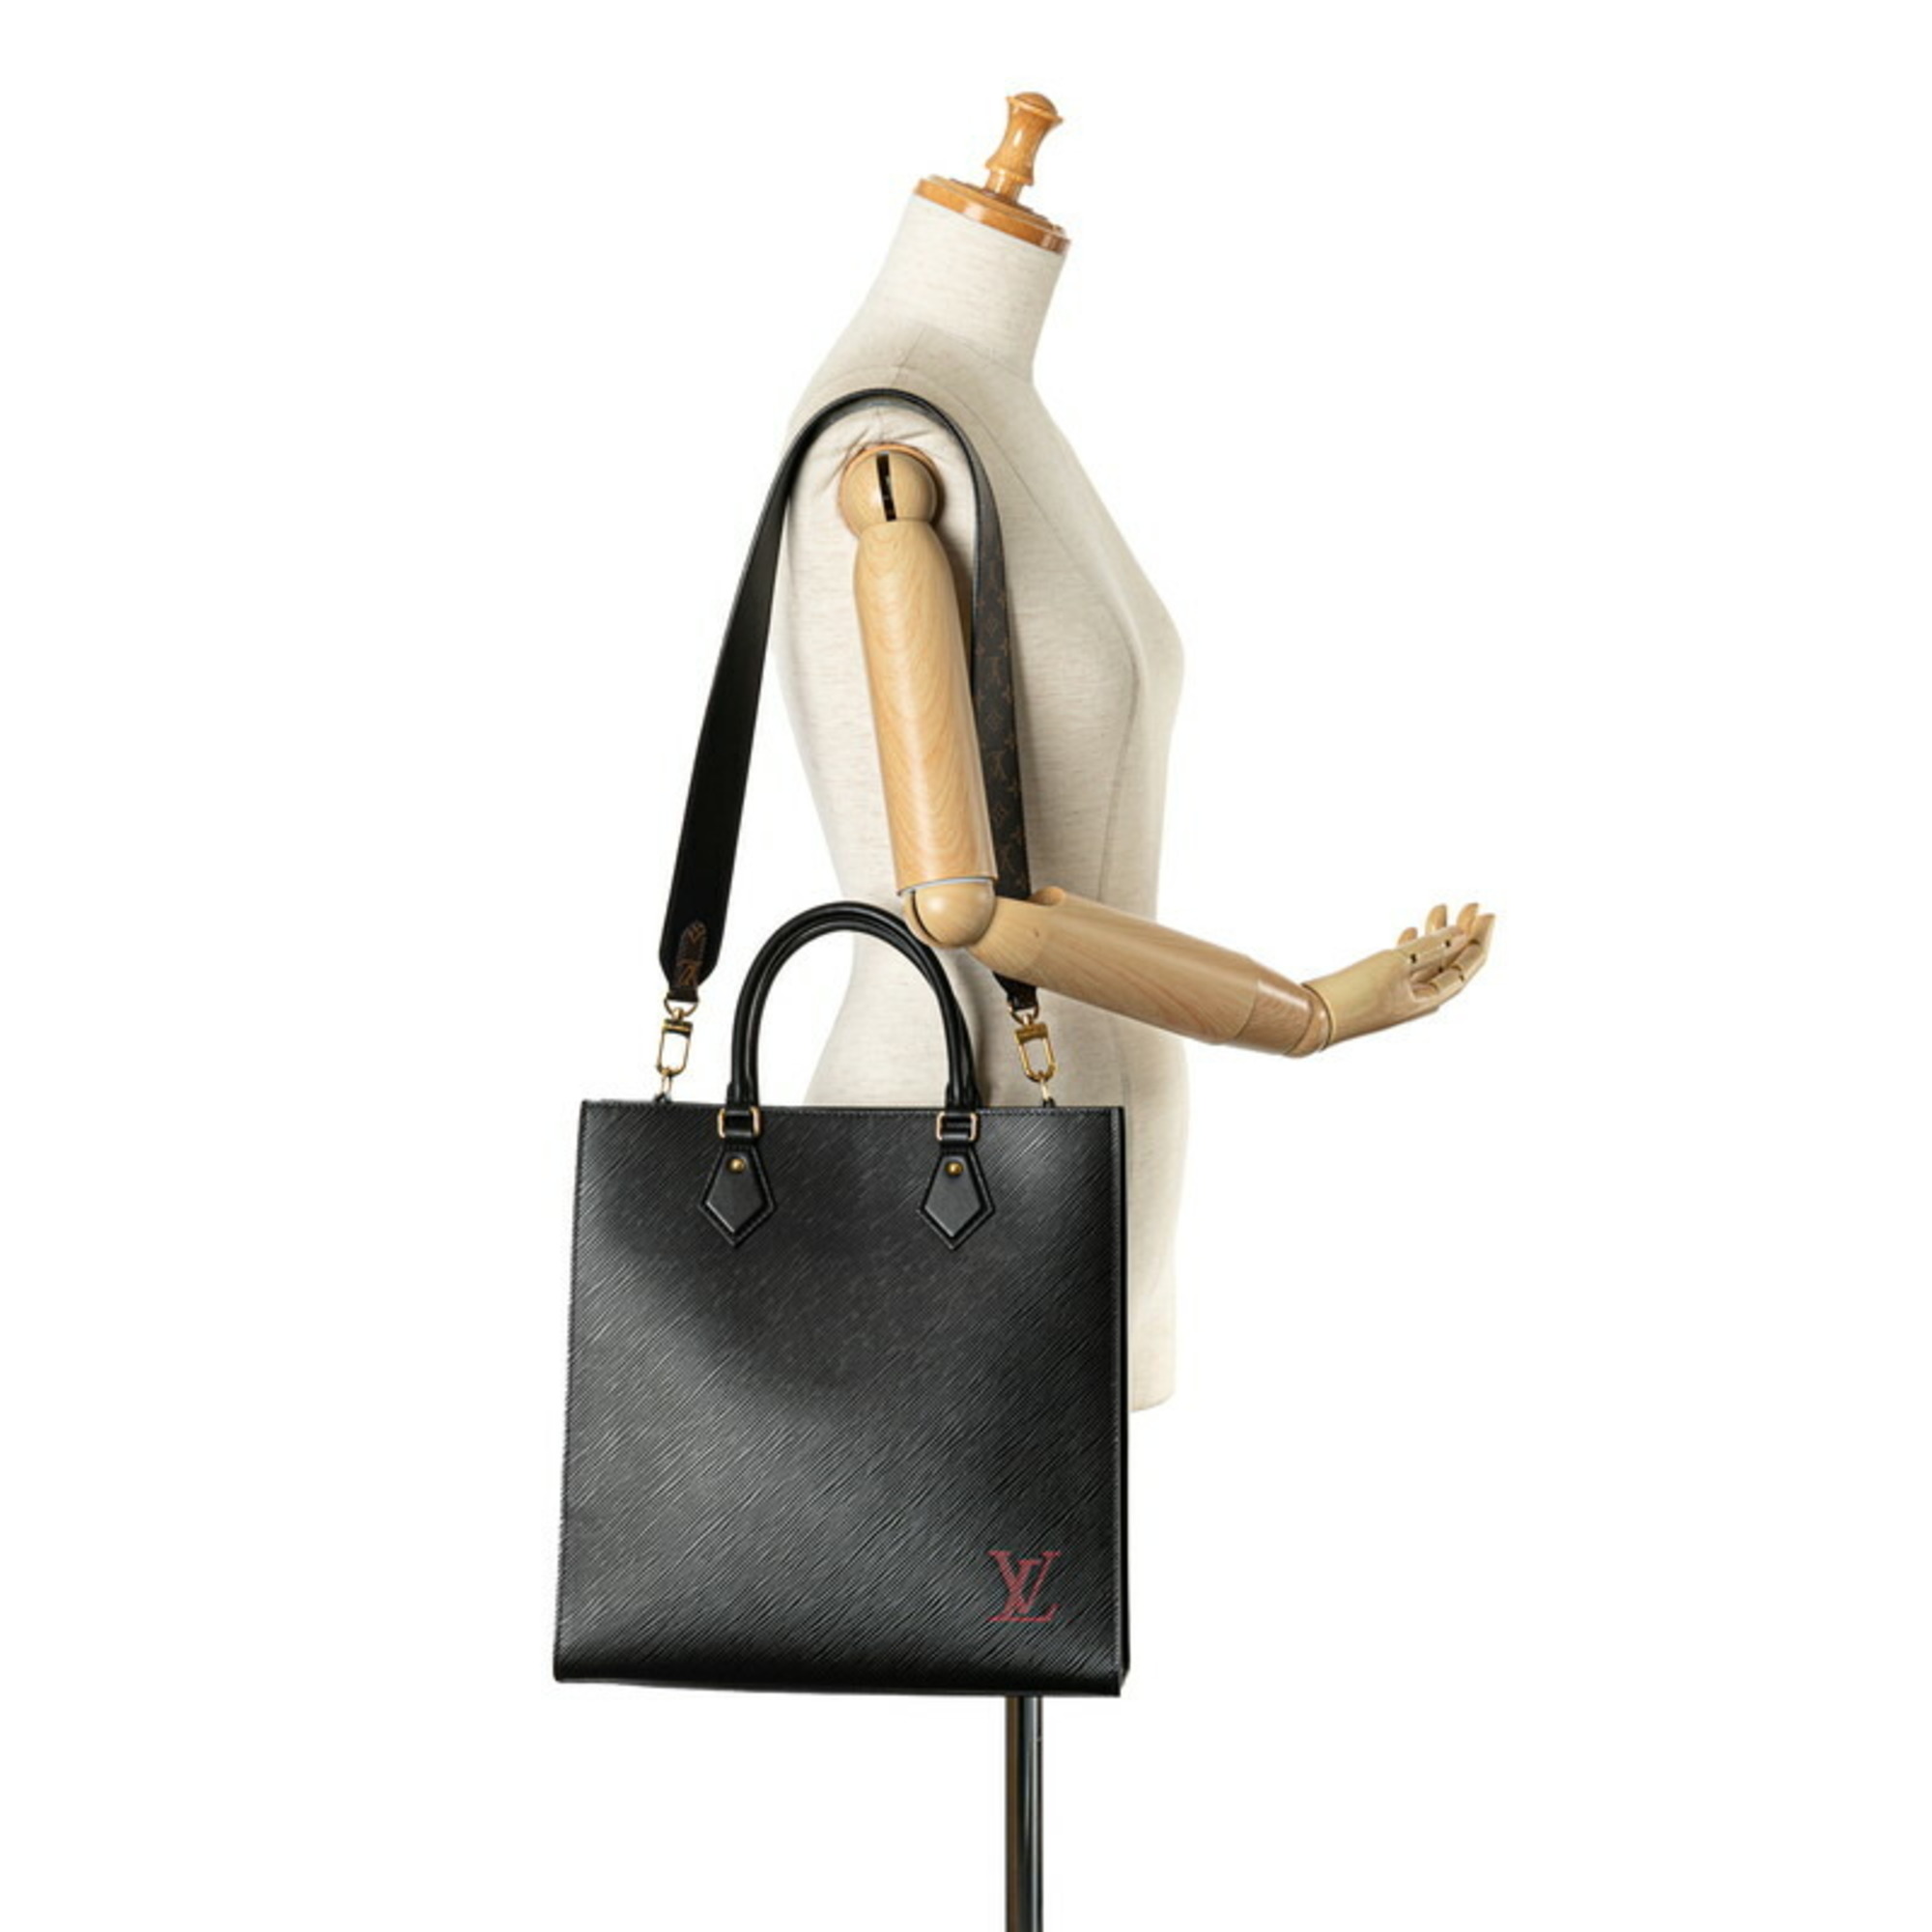 Louis Vuitton Epi Sac Plat PM Tote Bag Shoulder M58658 Noir Black Leather Women's LOUIS VUITTON